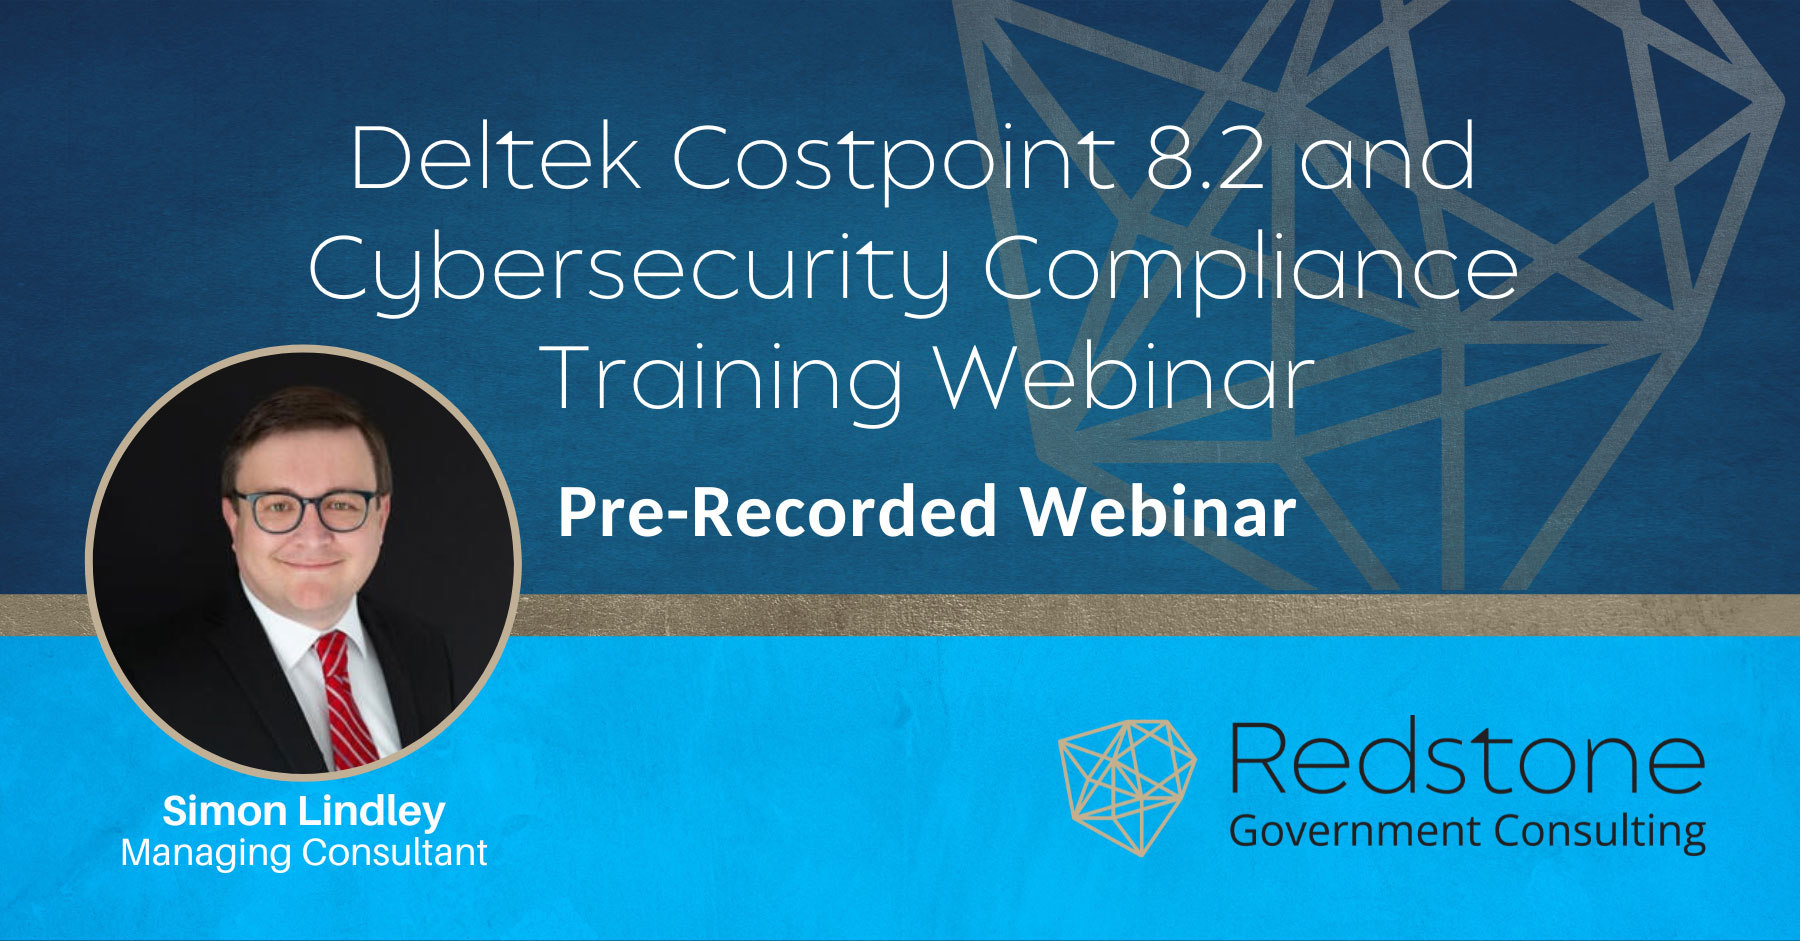 RGCI Deltek Costpoint 8.2 and Cybersecurity Compliance Training Webinar